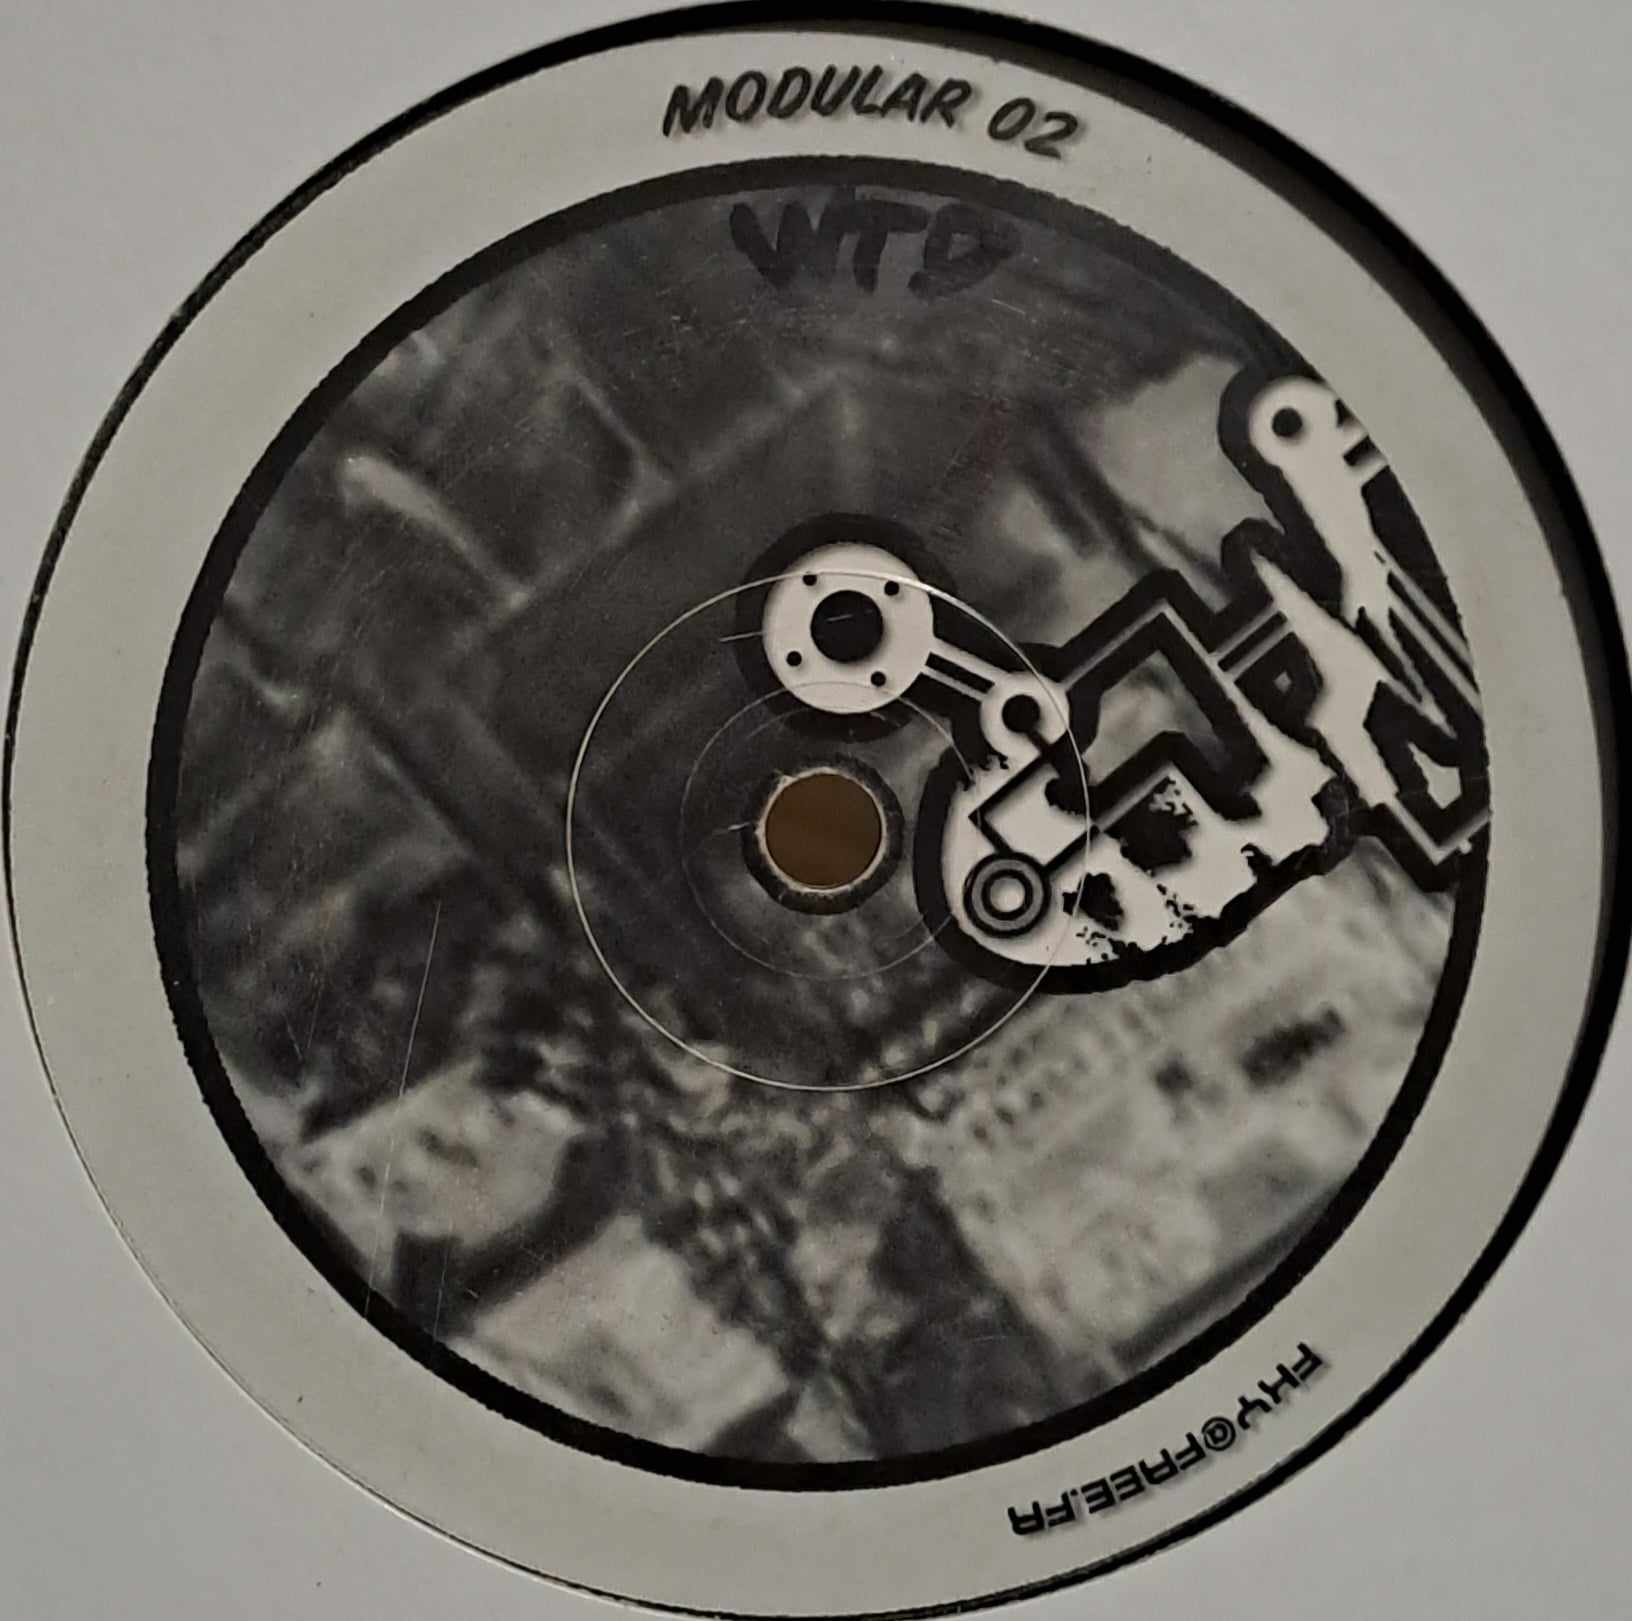 Modular 02 - vinyle freetekno